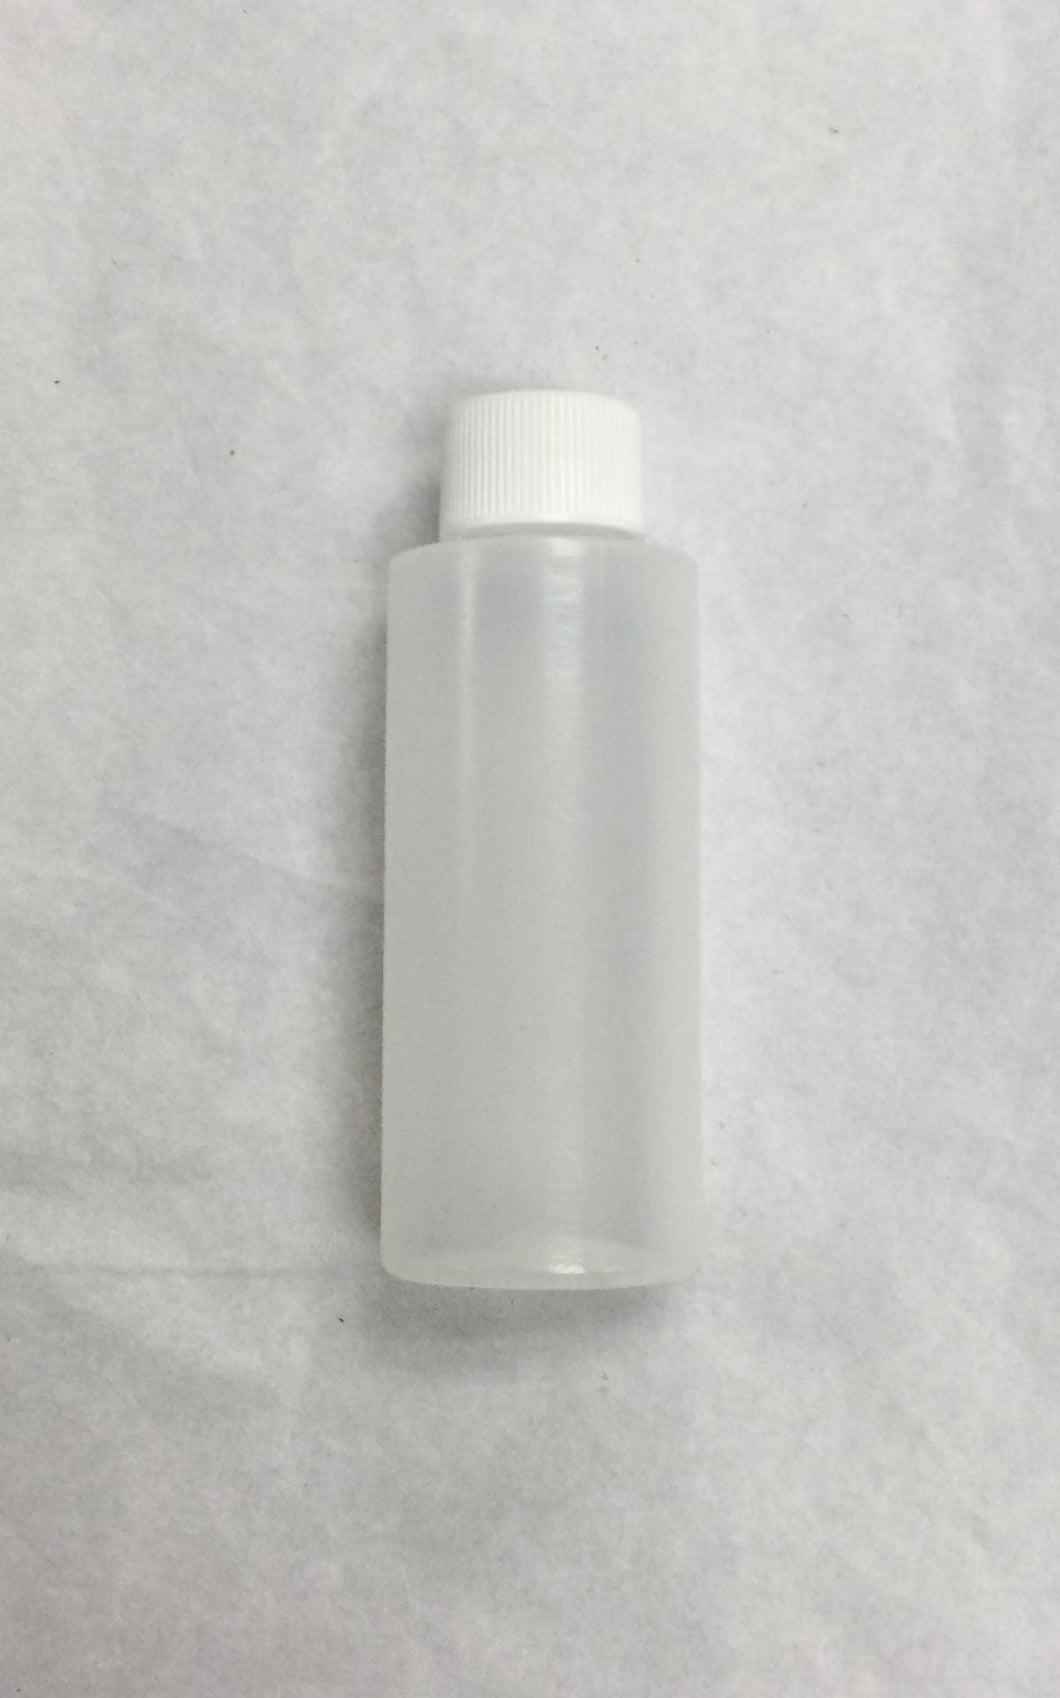 Plastic Screw Cap Bottle 60ml